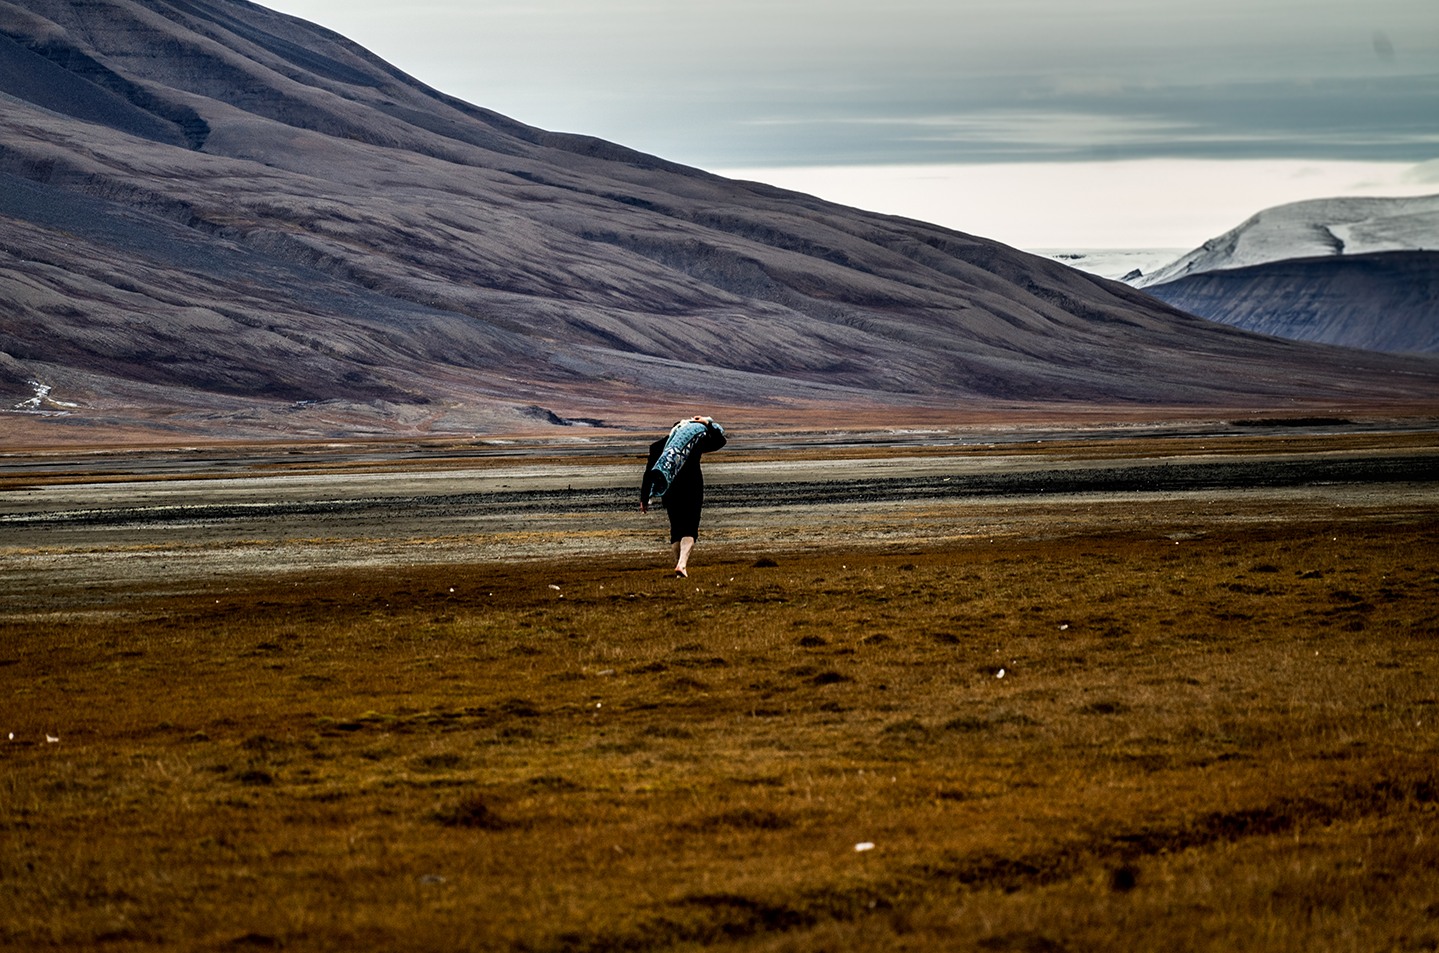 Barefoot man on Svalbard, photo